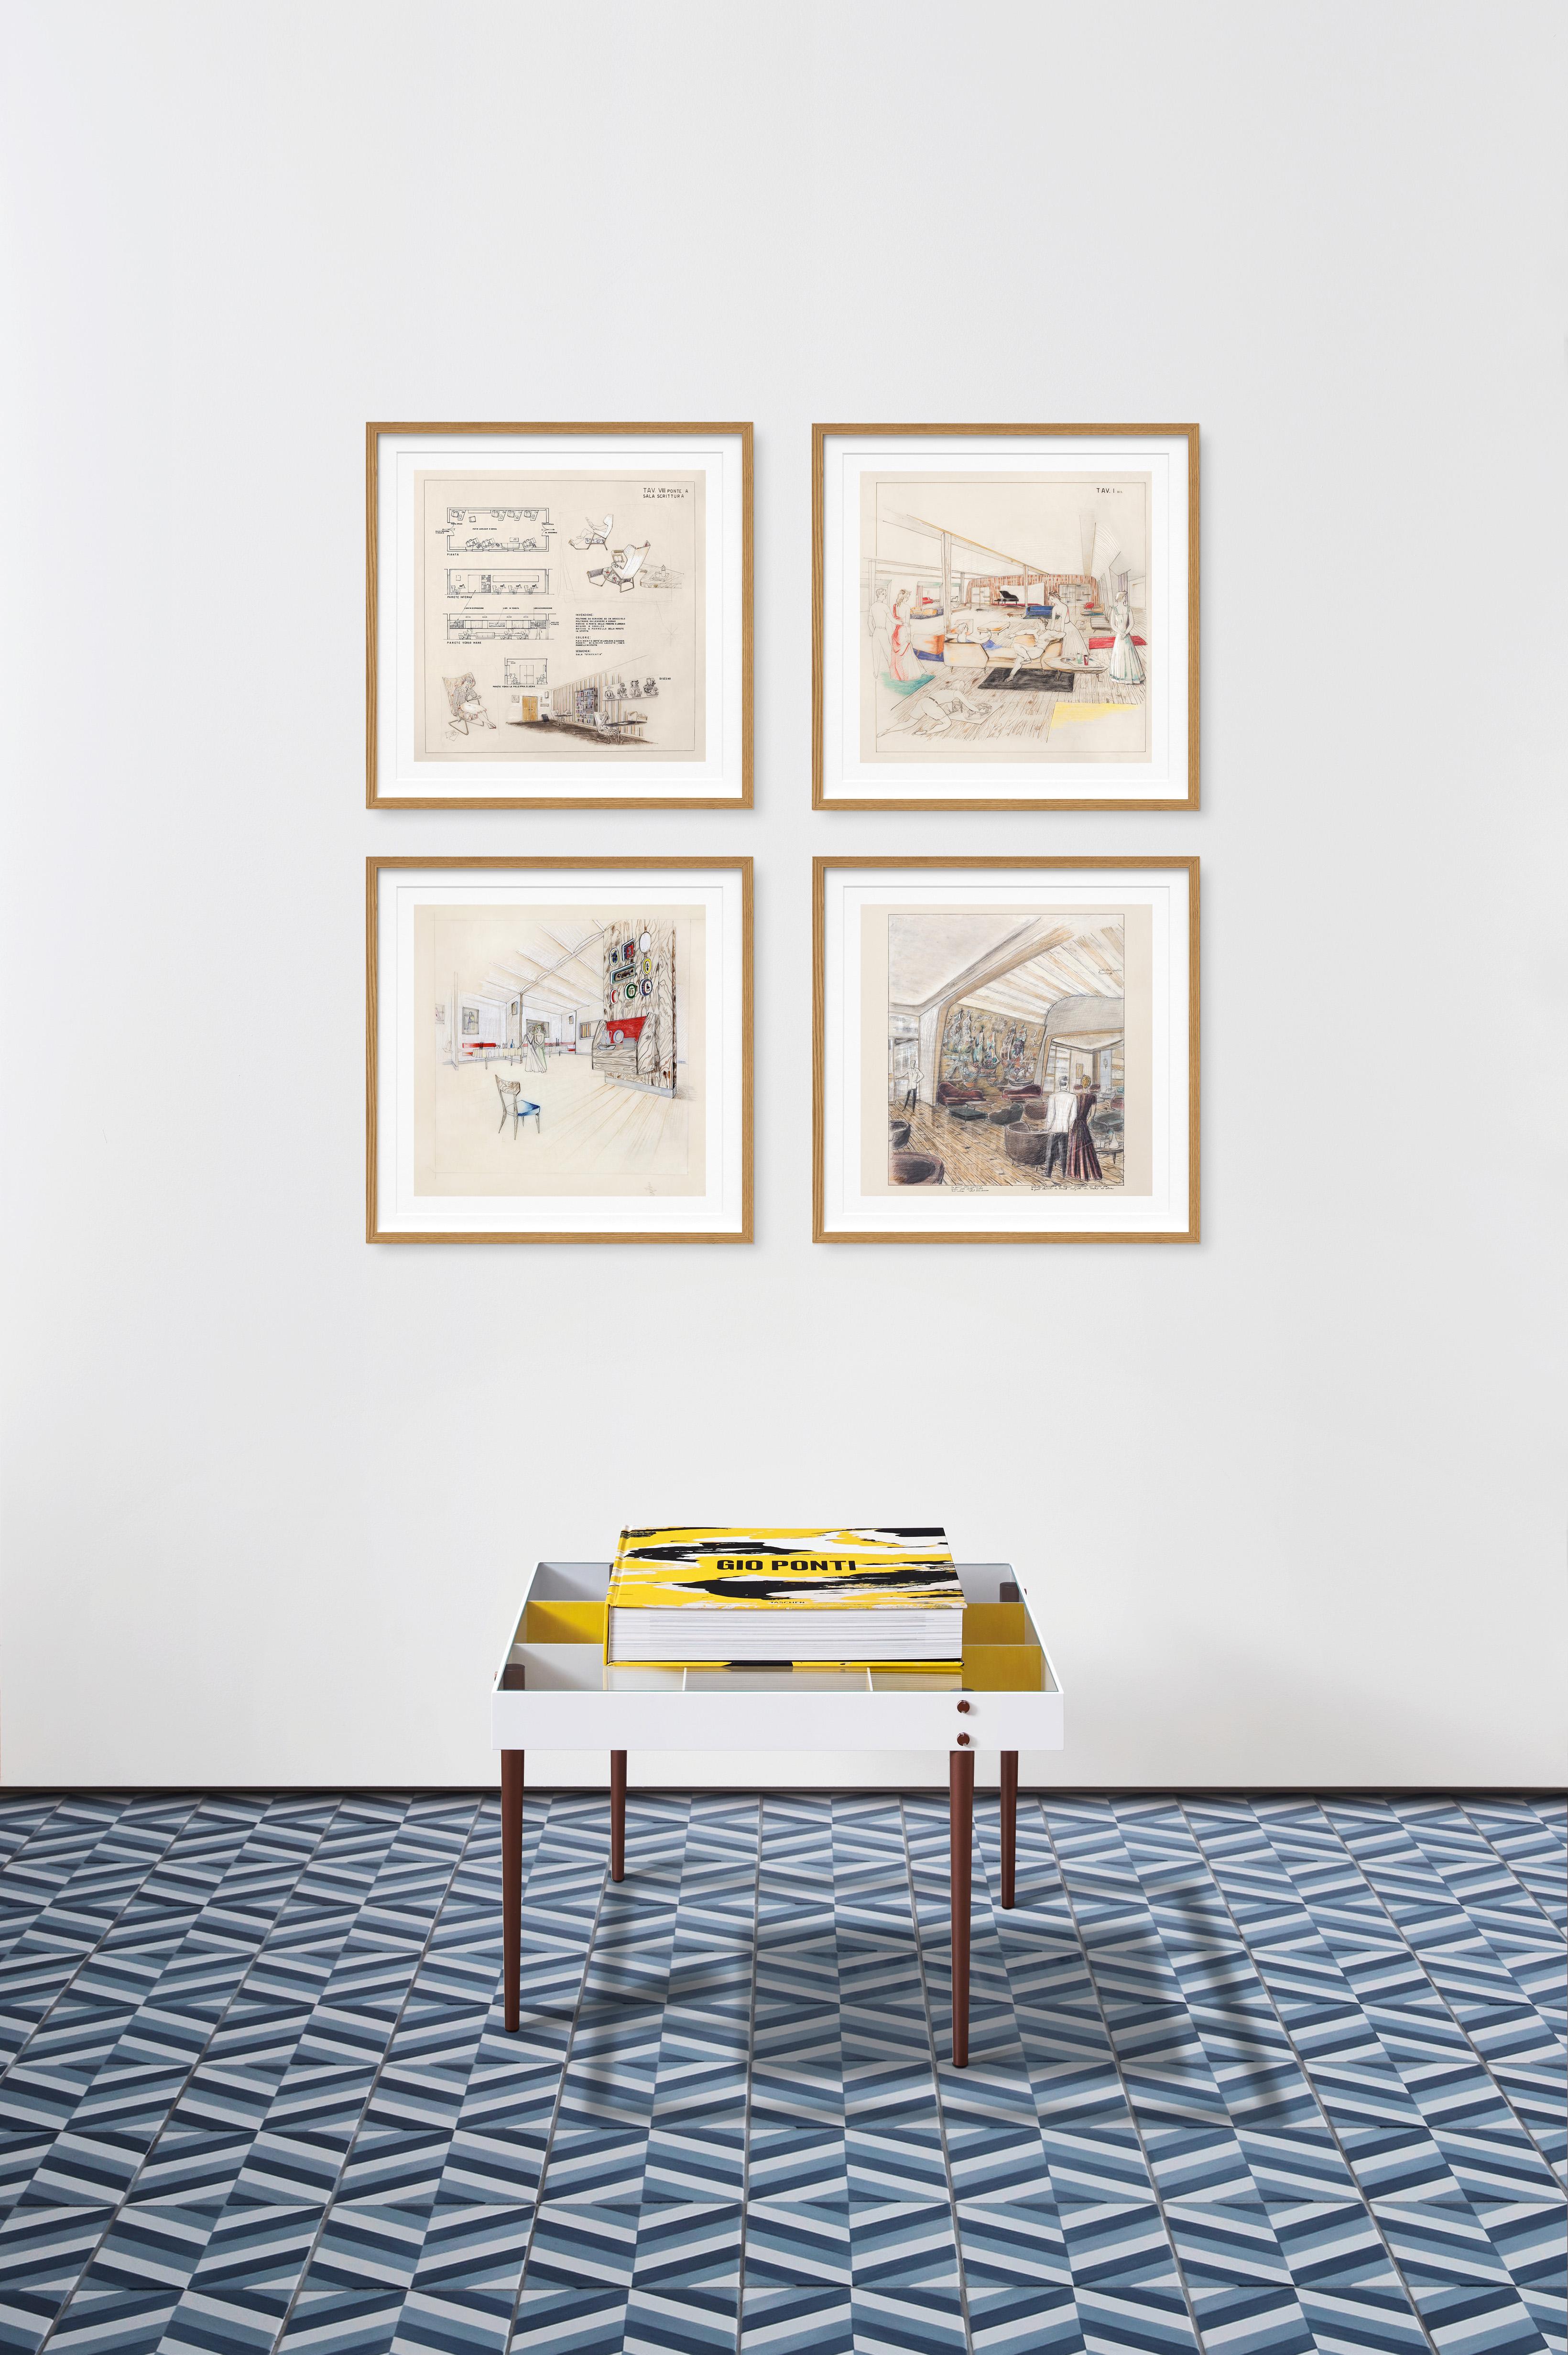 Cette édition d'art numérotée de 1 000 exemplaires (livre relié, 36 x 36 cm, 572 pages) est accompagnée d'une reproduction exclusive, de format carré, de la table basse Arlecchino conçue par Gio Ponti et d'un ensemble de quatre impressions